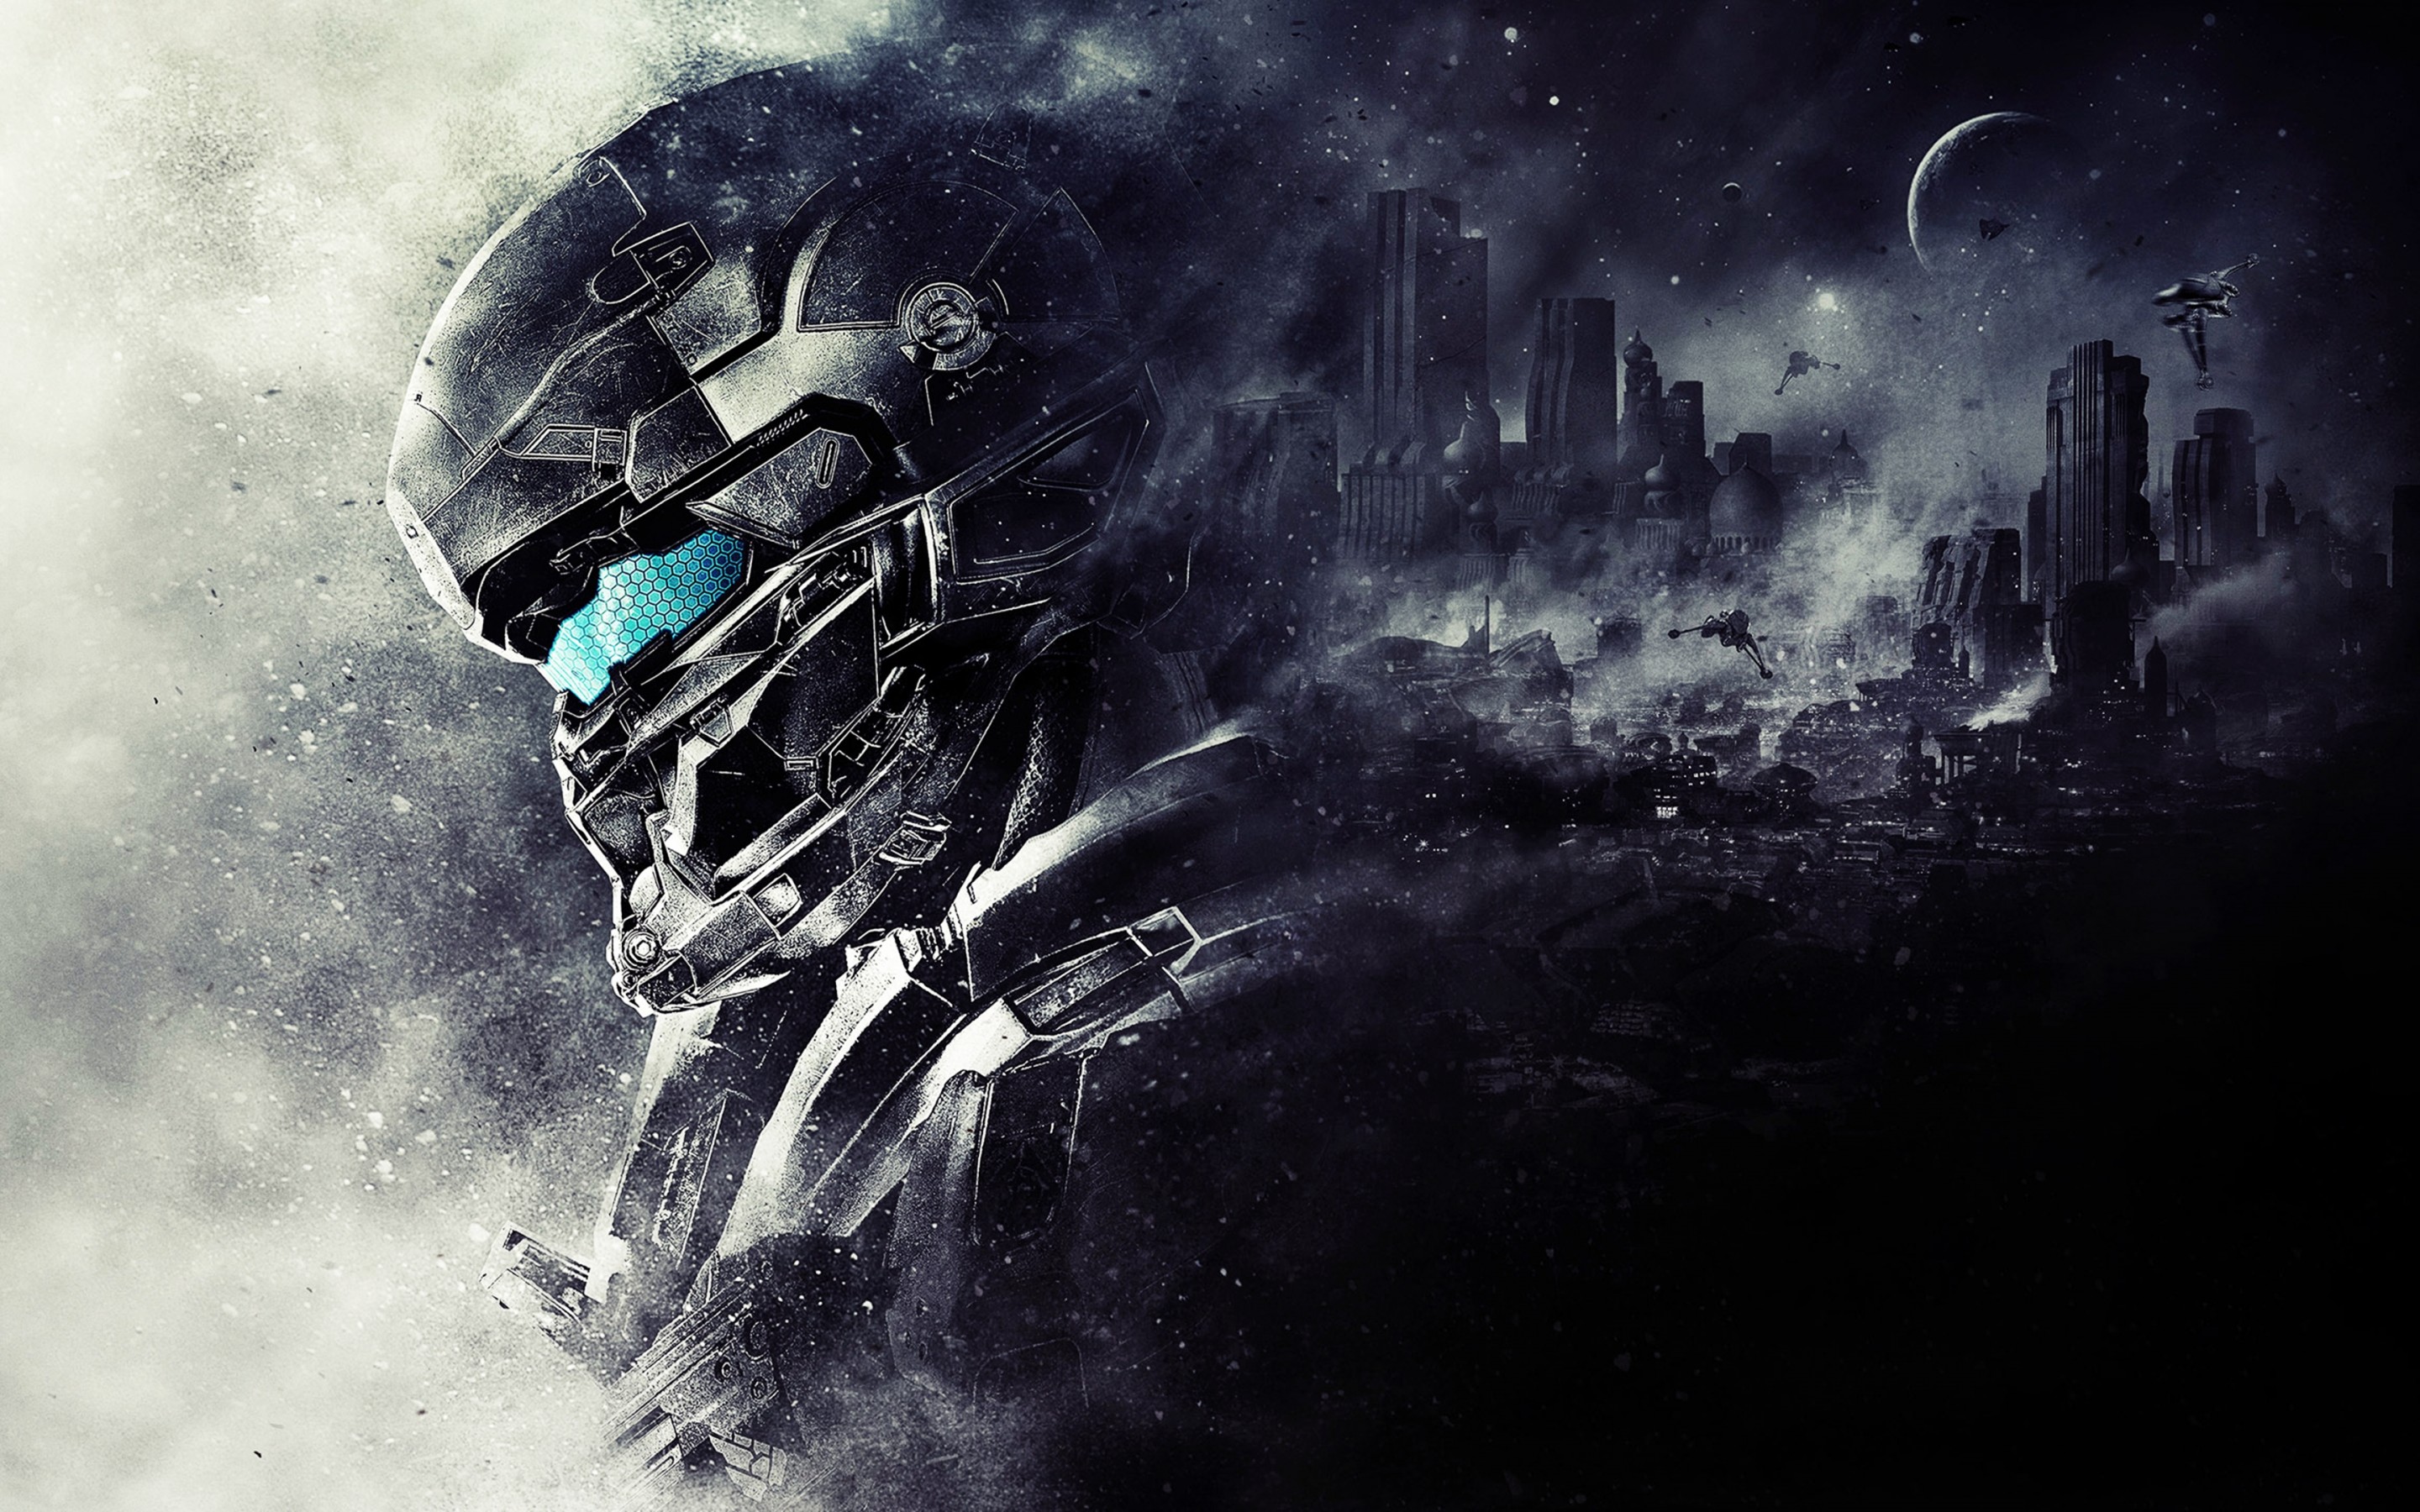 Halo 5 Guardians Wallpaper 2880x1800.com